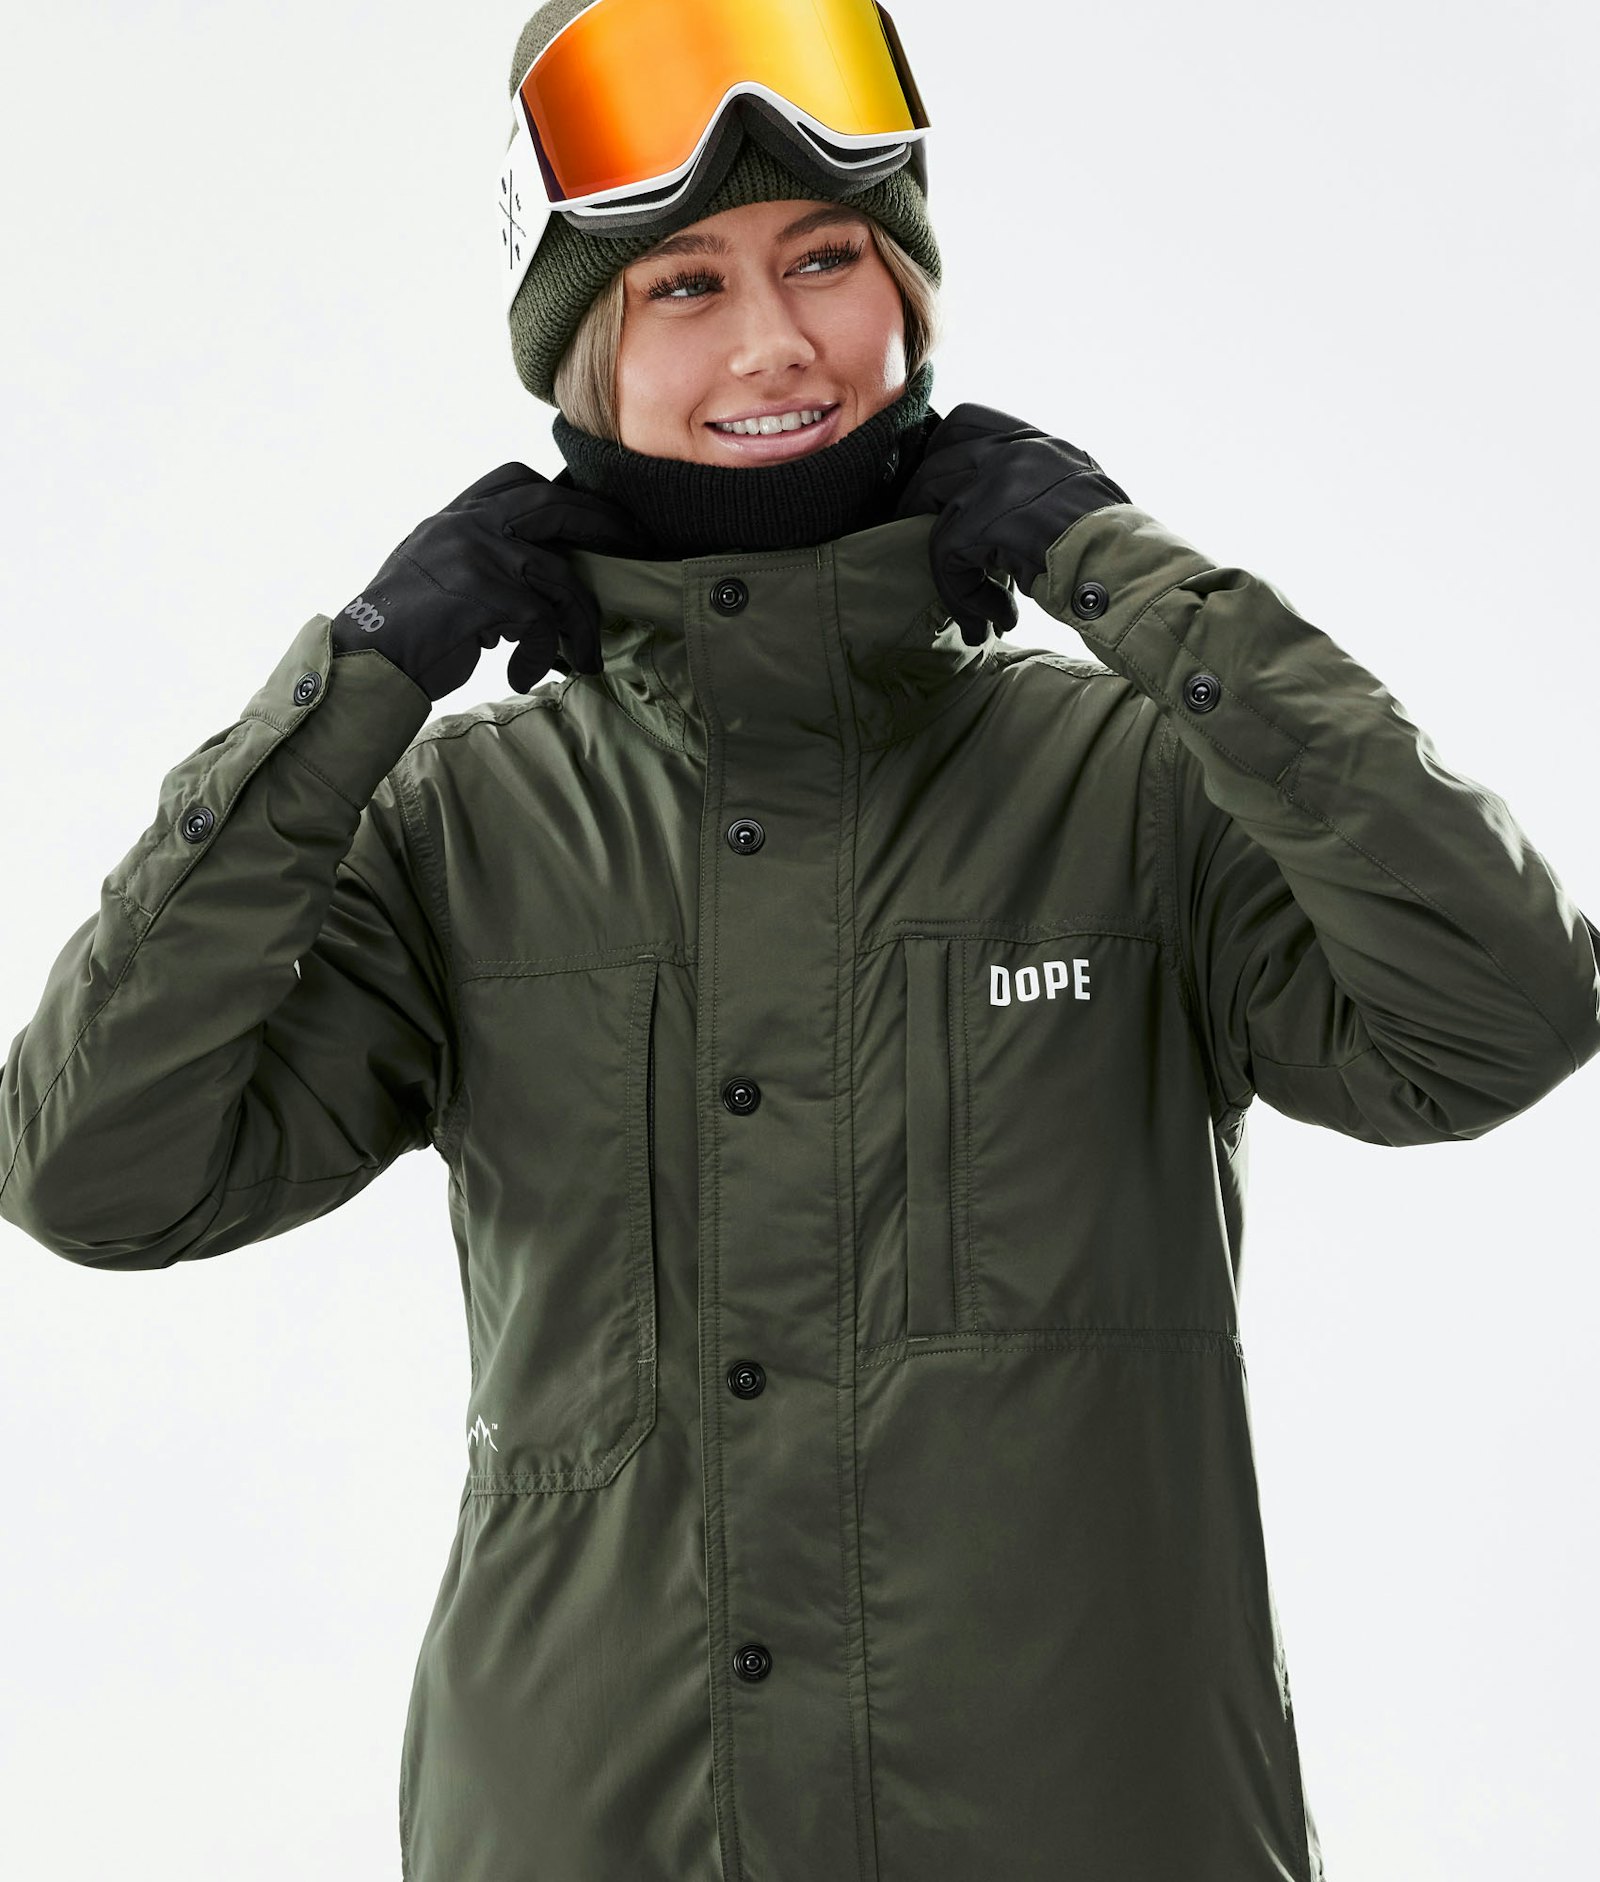 Insulated W Midlayer Jacket Ski Women Olive Green